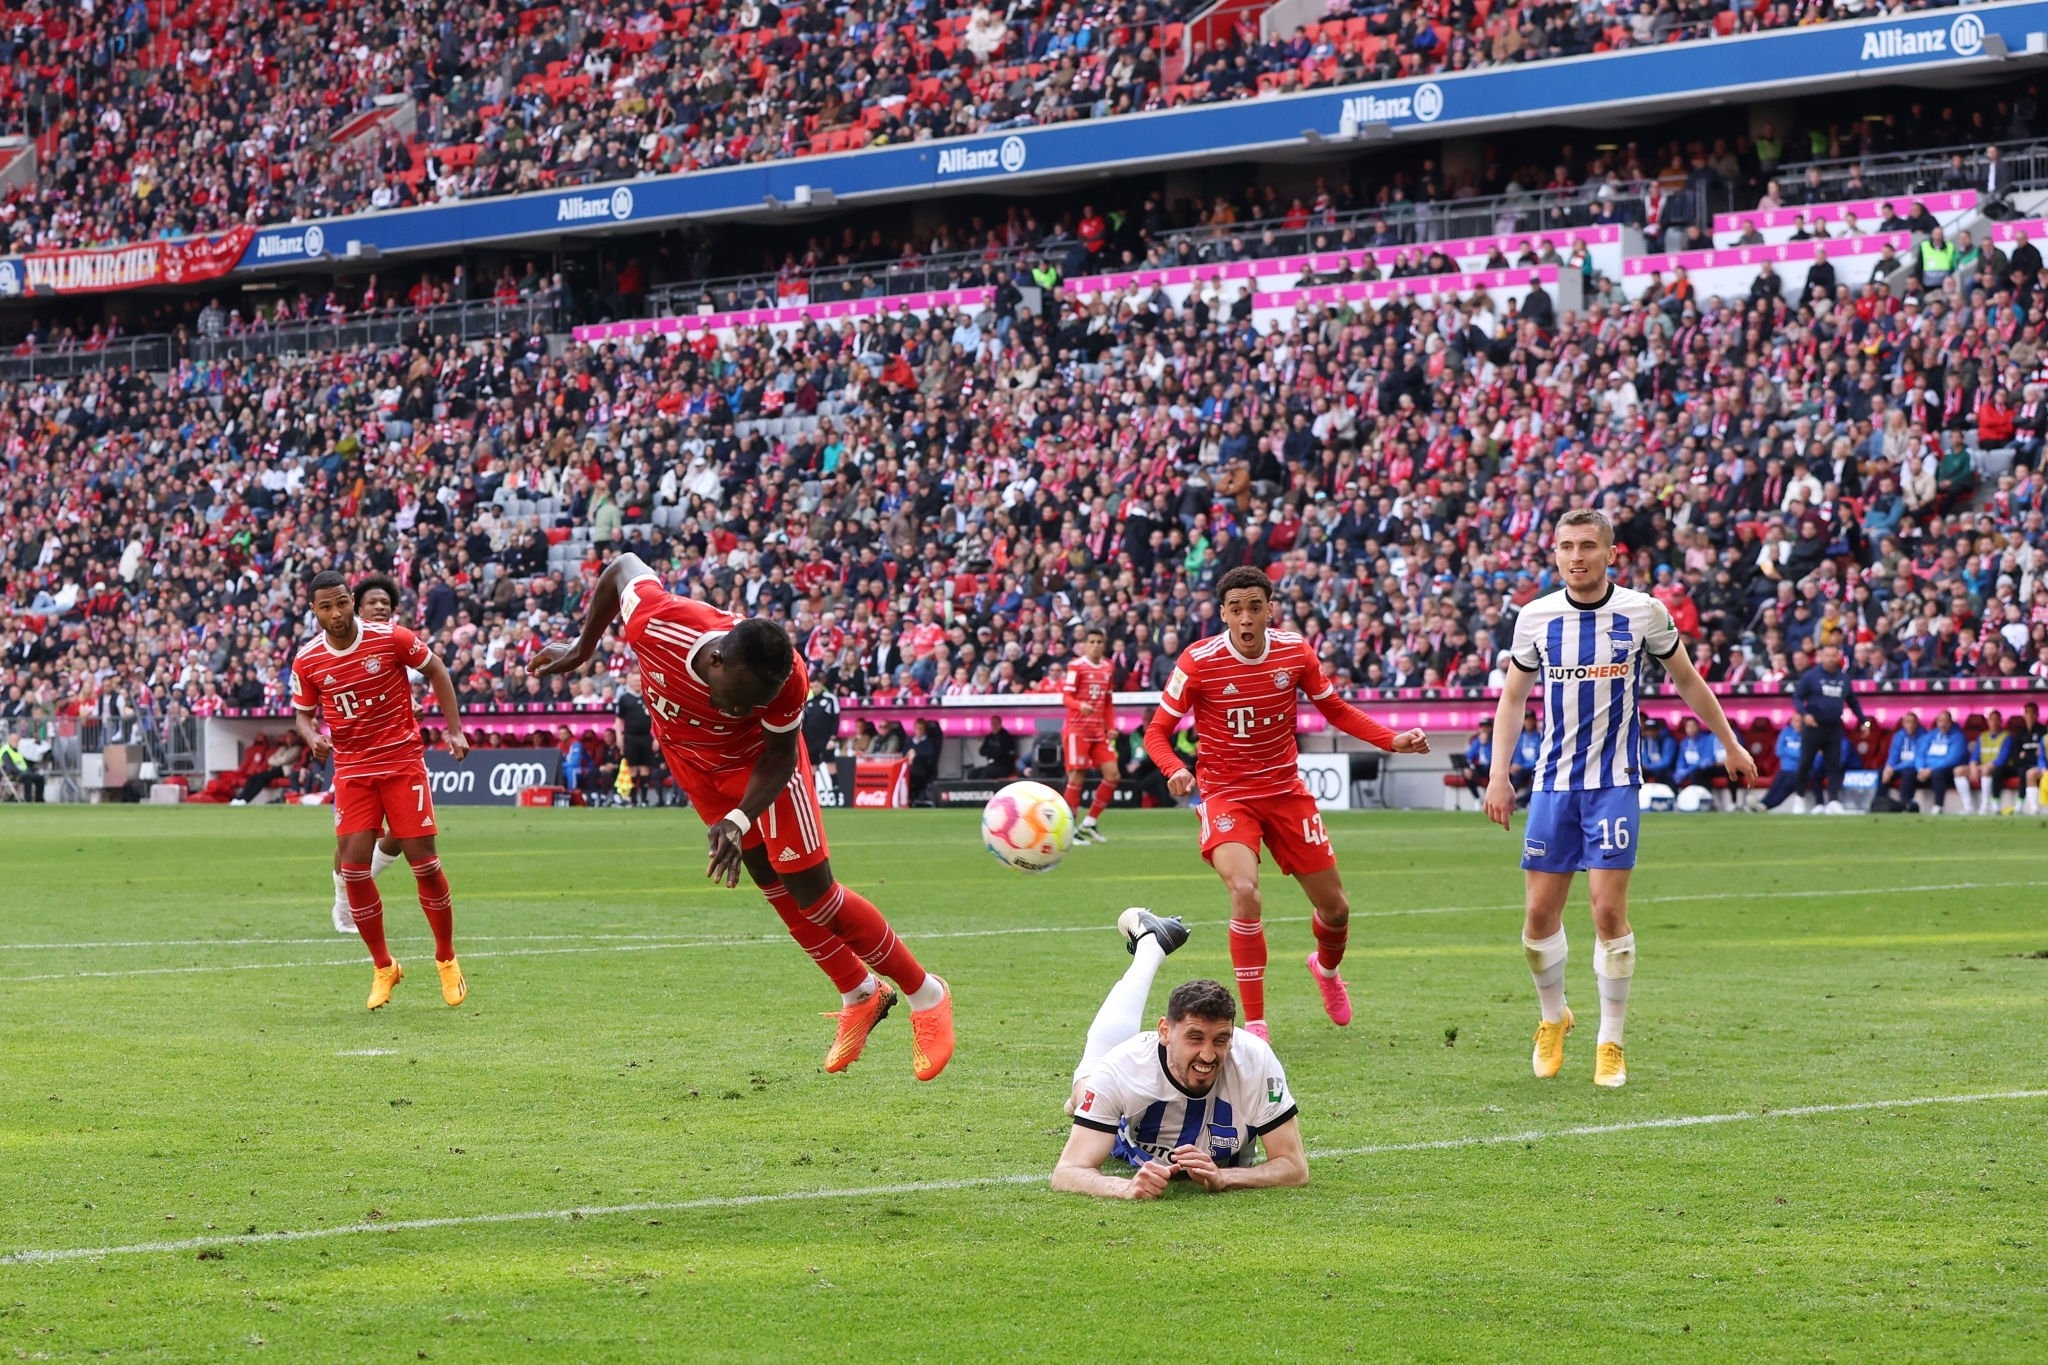 TIDAK ADA Masa Depan di Bayern Munich, Sadio Mane MENCARI peluang baru di Transfer Musim Panas